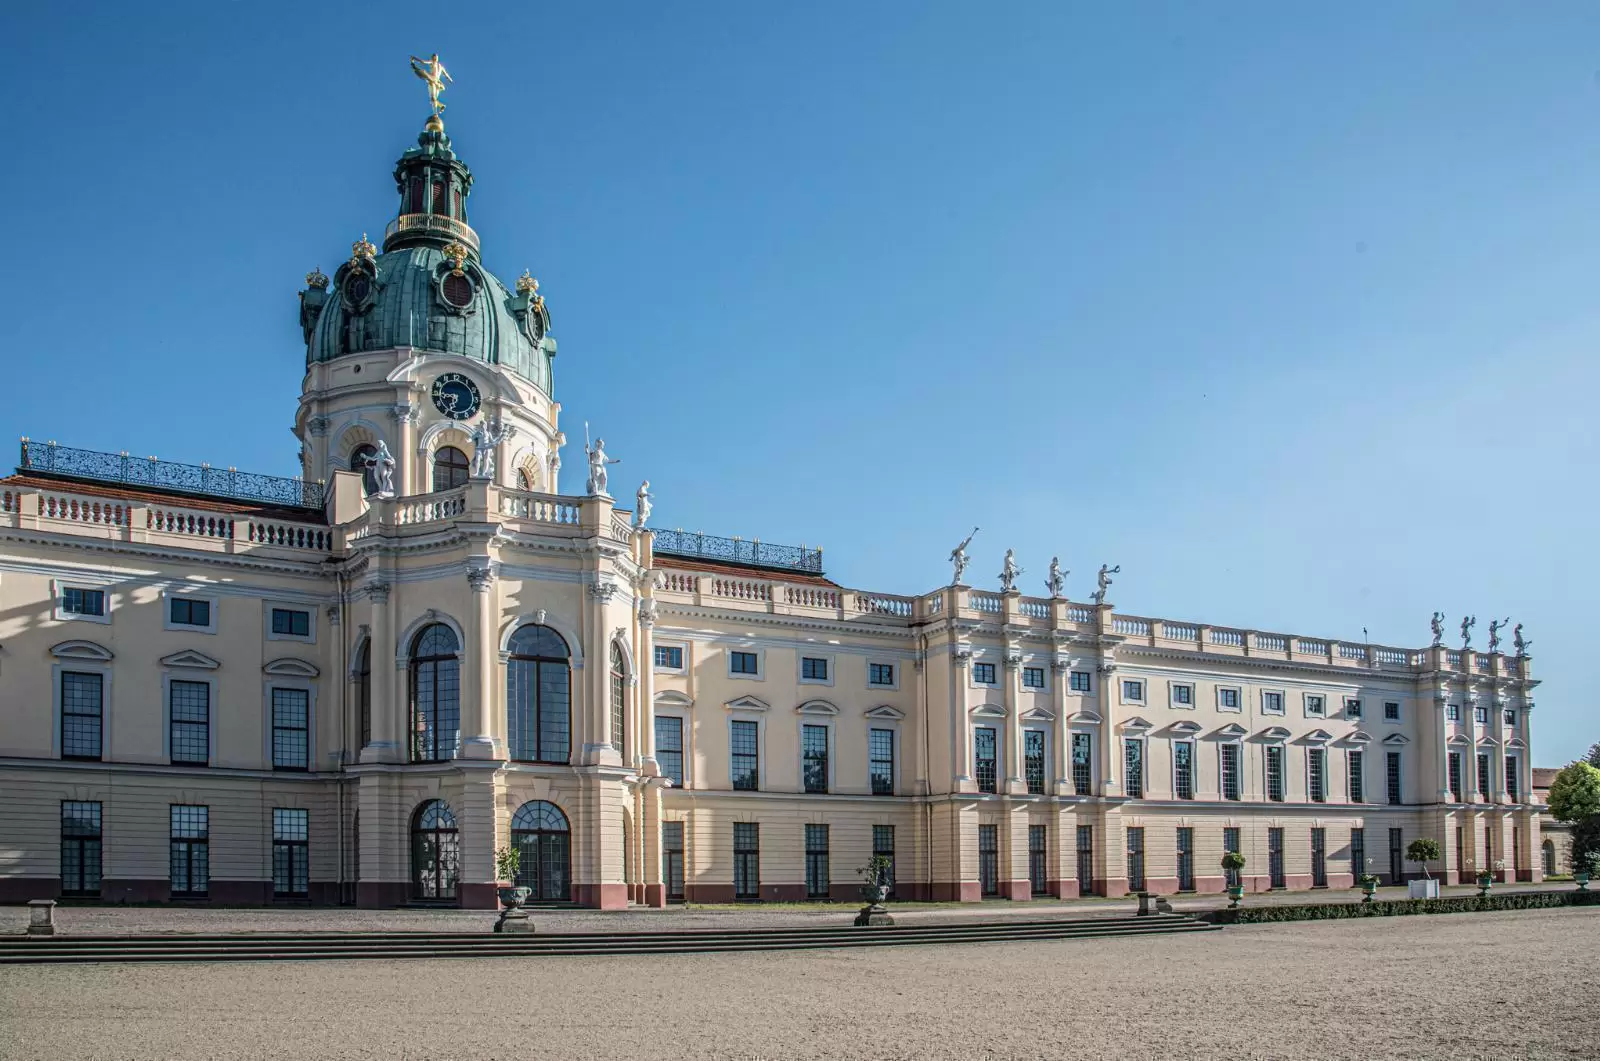 Berlin Charlottenburg Palace